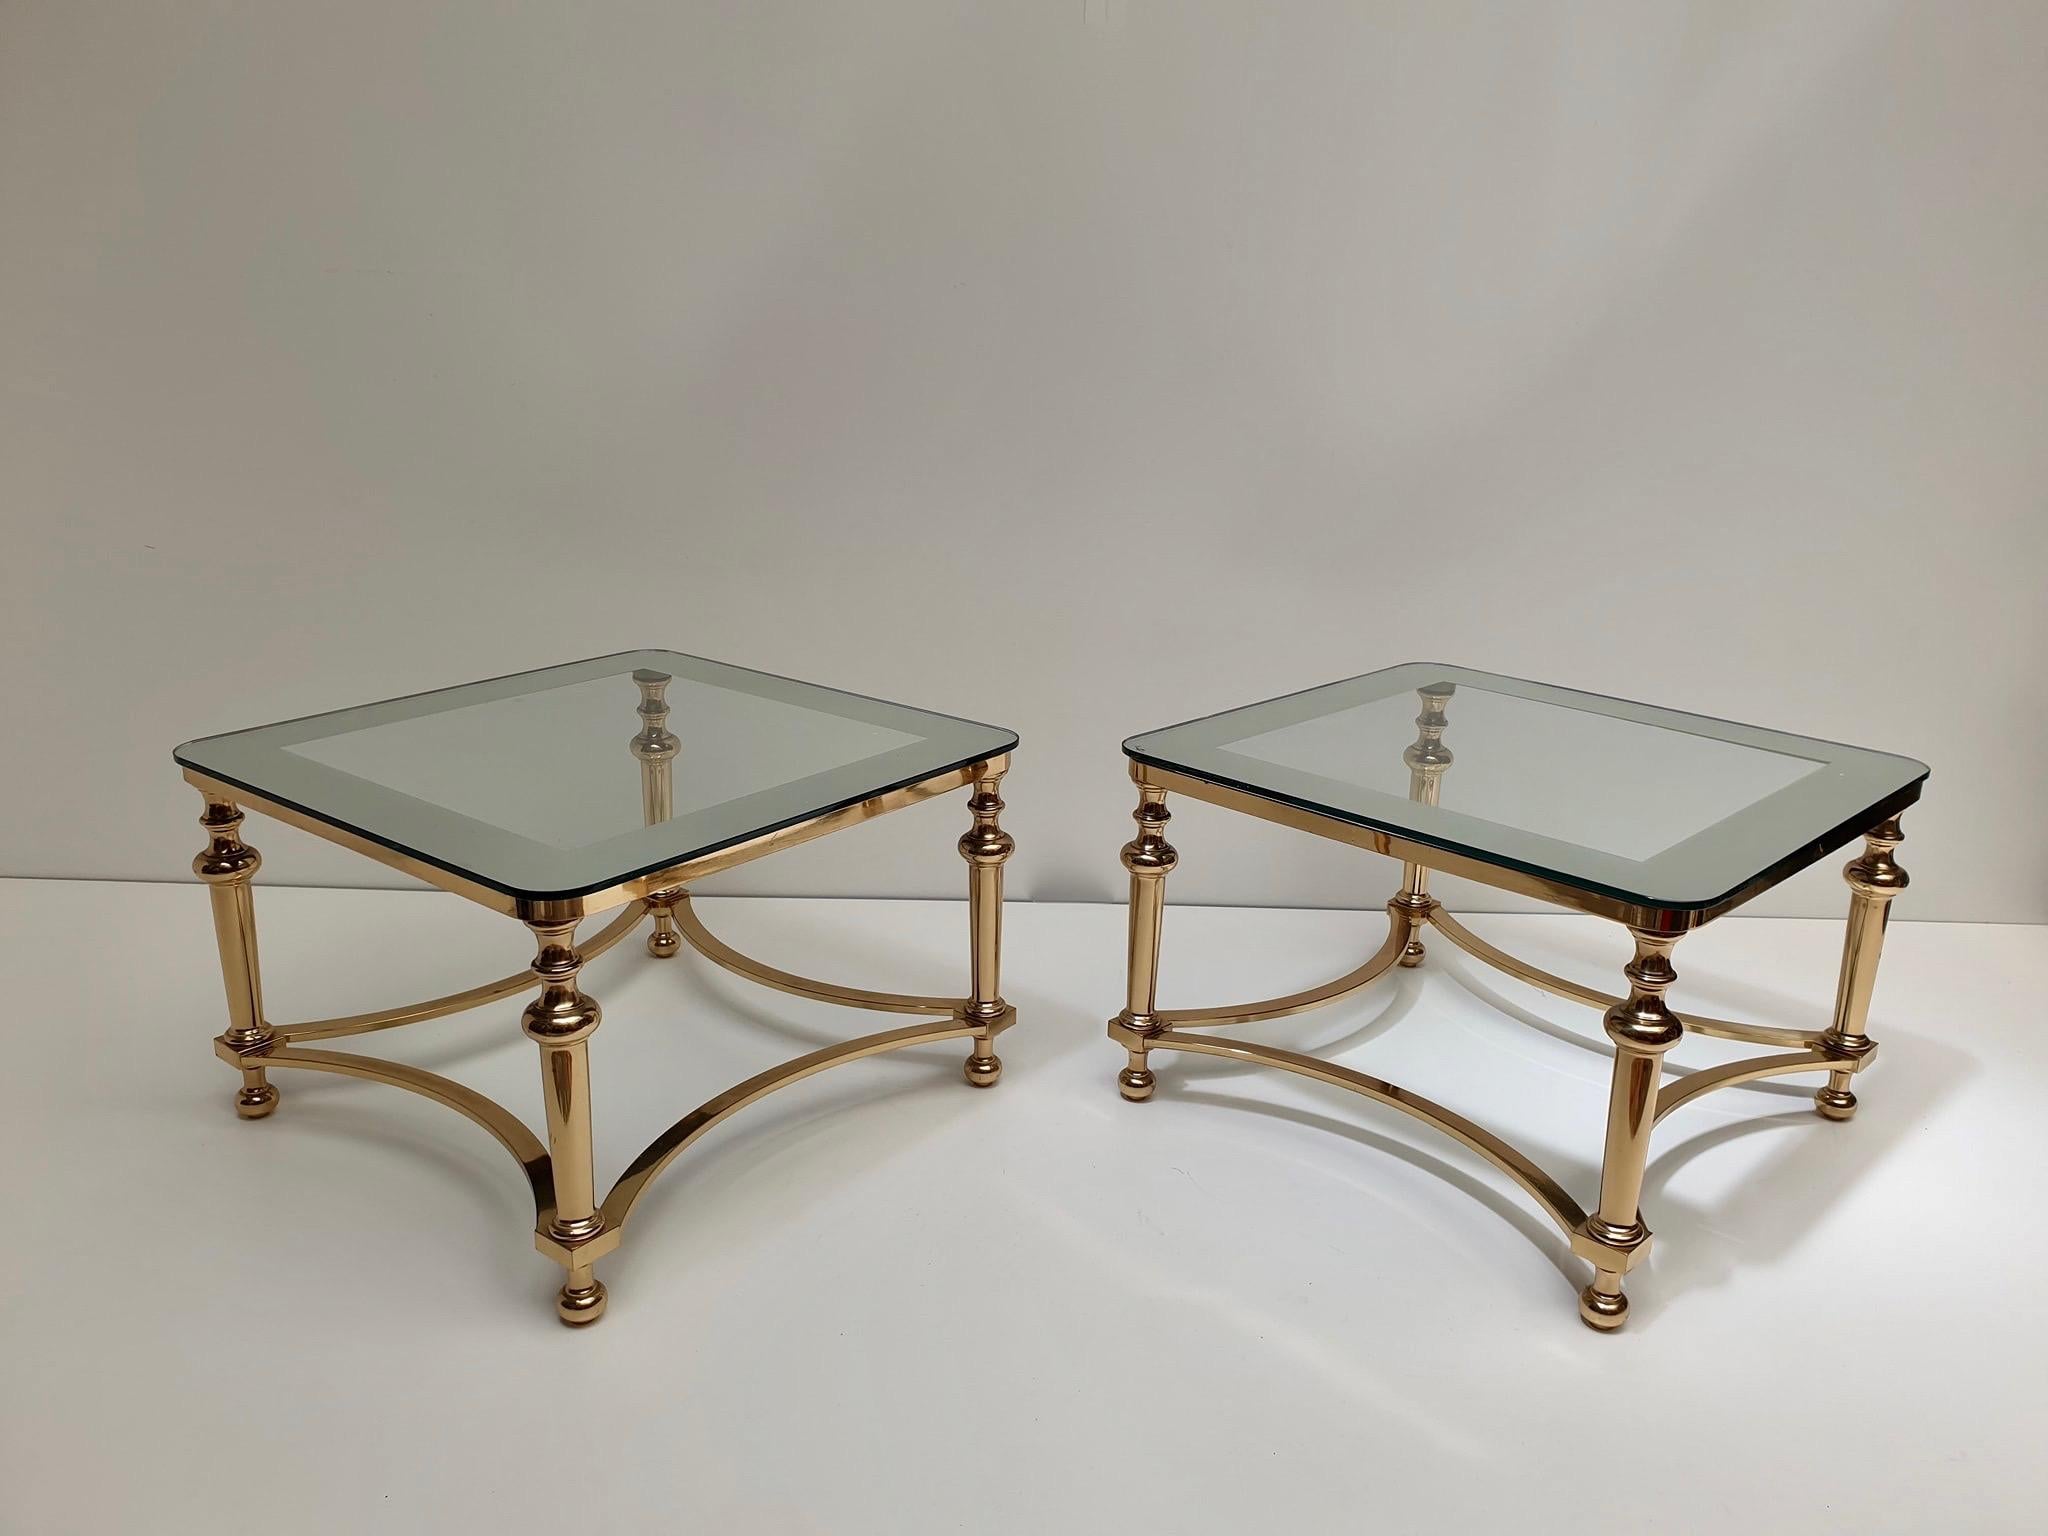 Atemberaubendes Paar Hollywood Regency Beistelltische. 
Die Tische sind einfach umwerfend und elegant, die Platten sind aus Glas auf einem Messingfuß. 

Abmessungen: 40 cm Höhe x 61 cm Breite.